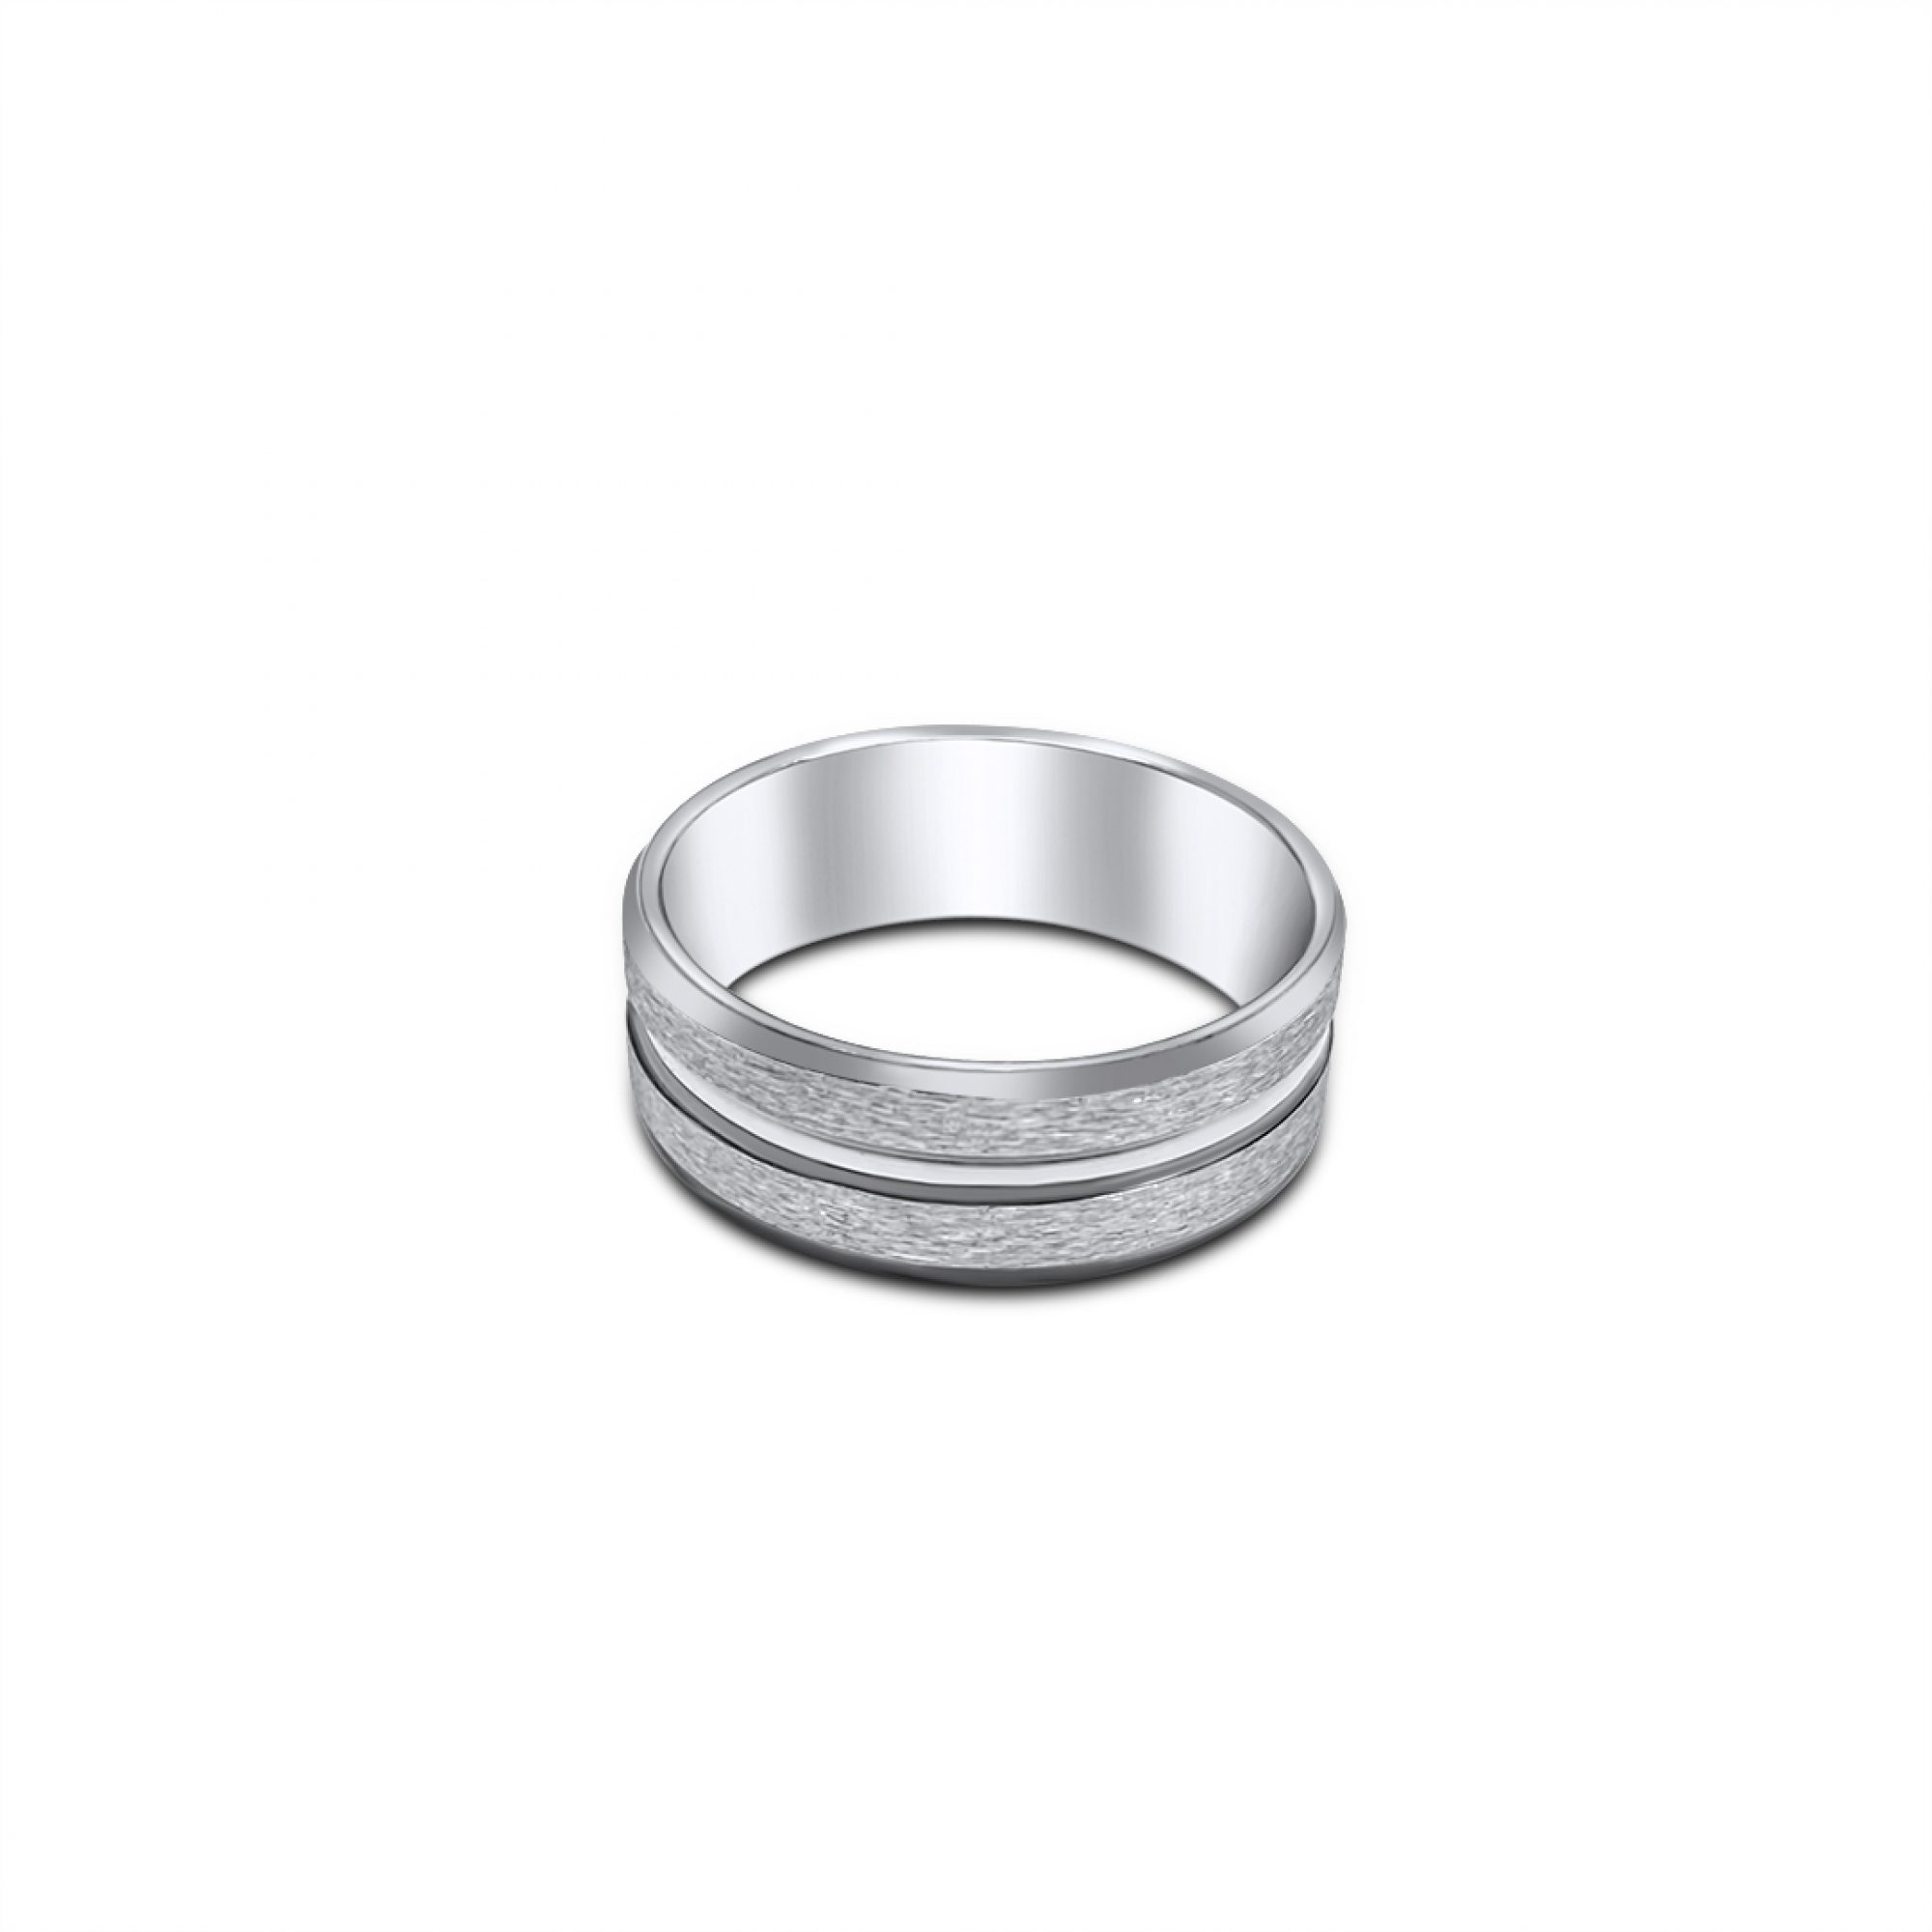 Engraved steel ring